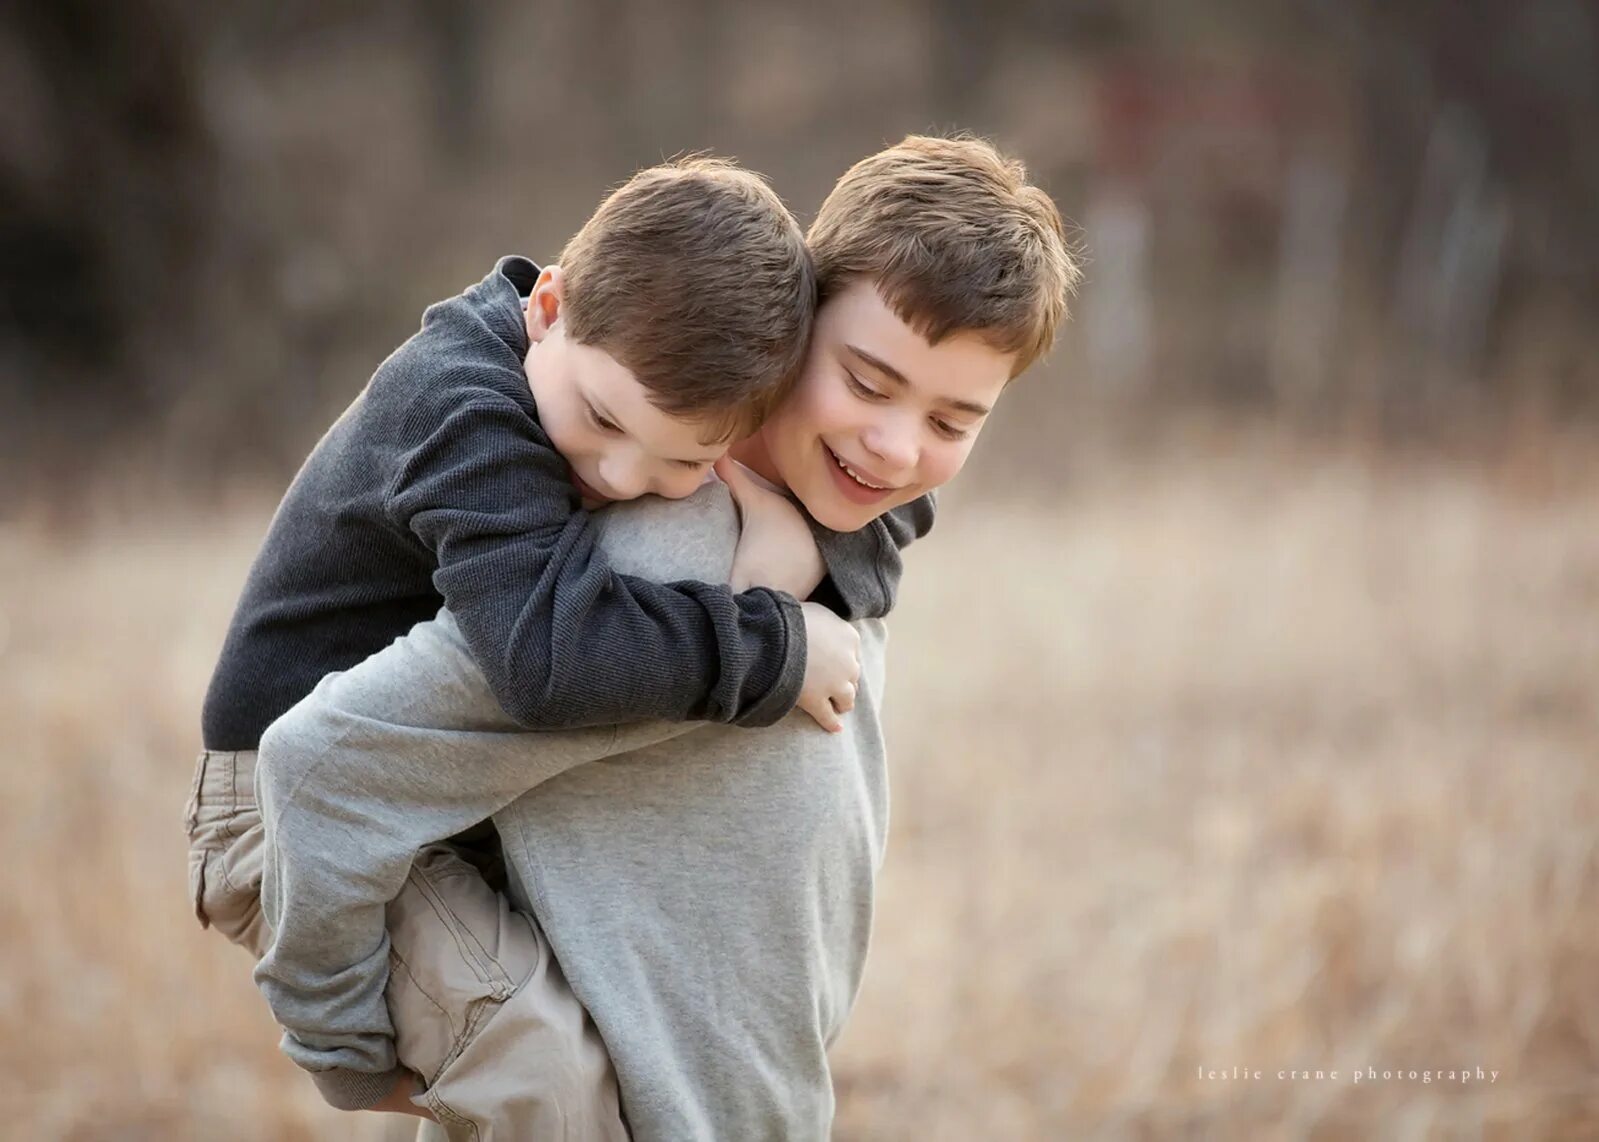 Обнял братика. Мальчики обнимаются. Два пальчика обнимаются. Два мальчика. Два мальчика обнимаются.